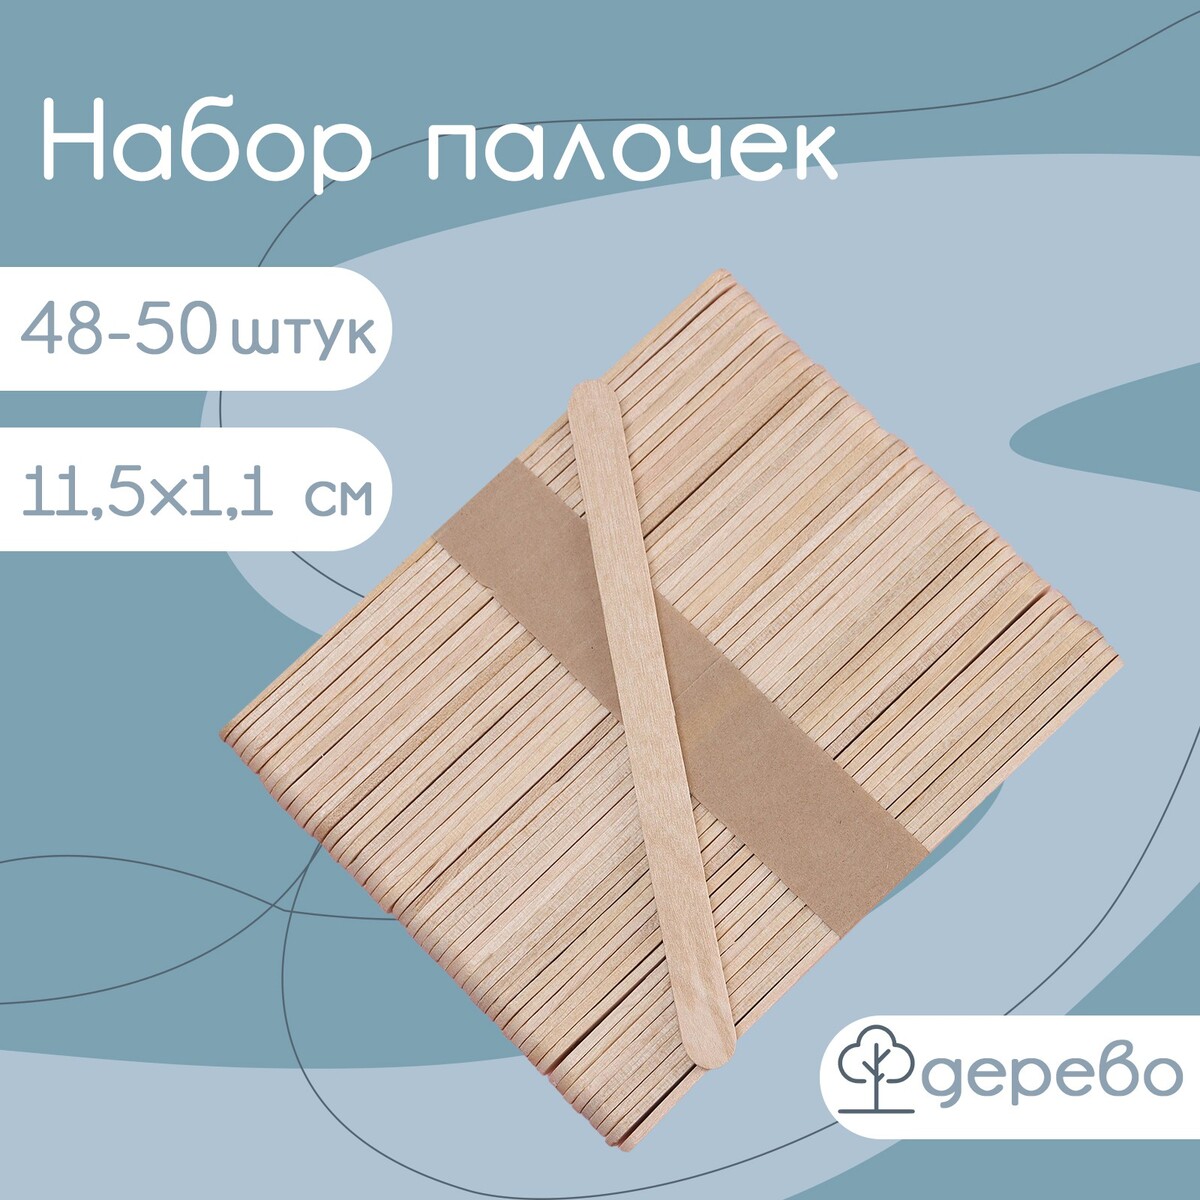 Набор деревянных палочек для мороженого, 11,5×1,1 см, 48-50 шт набор для моделирования бровей тон 1004